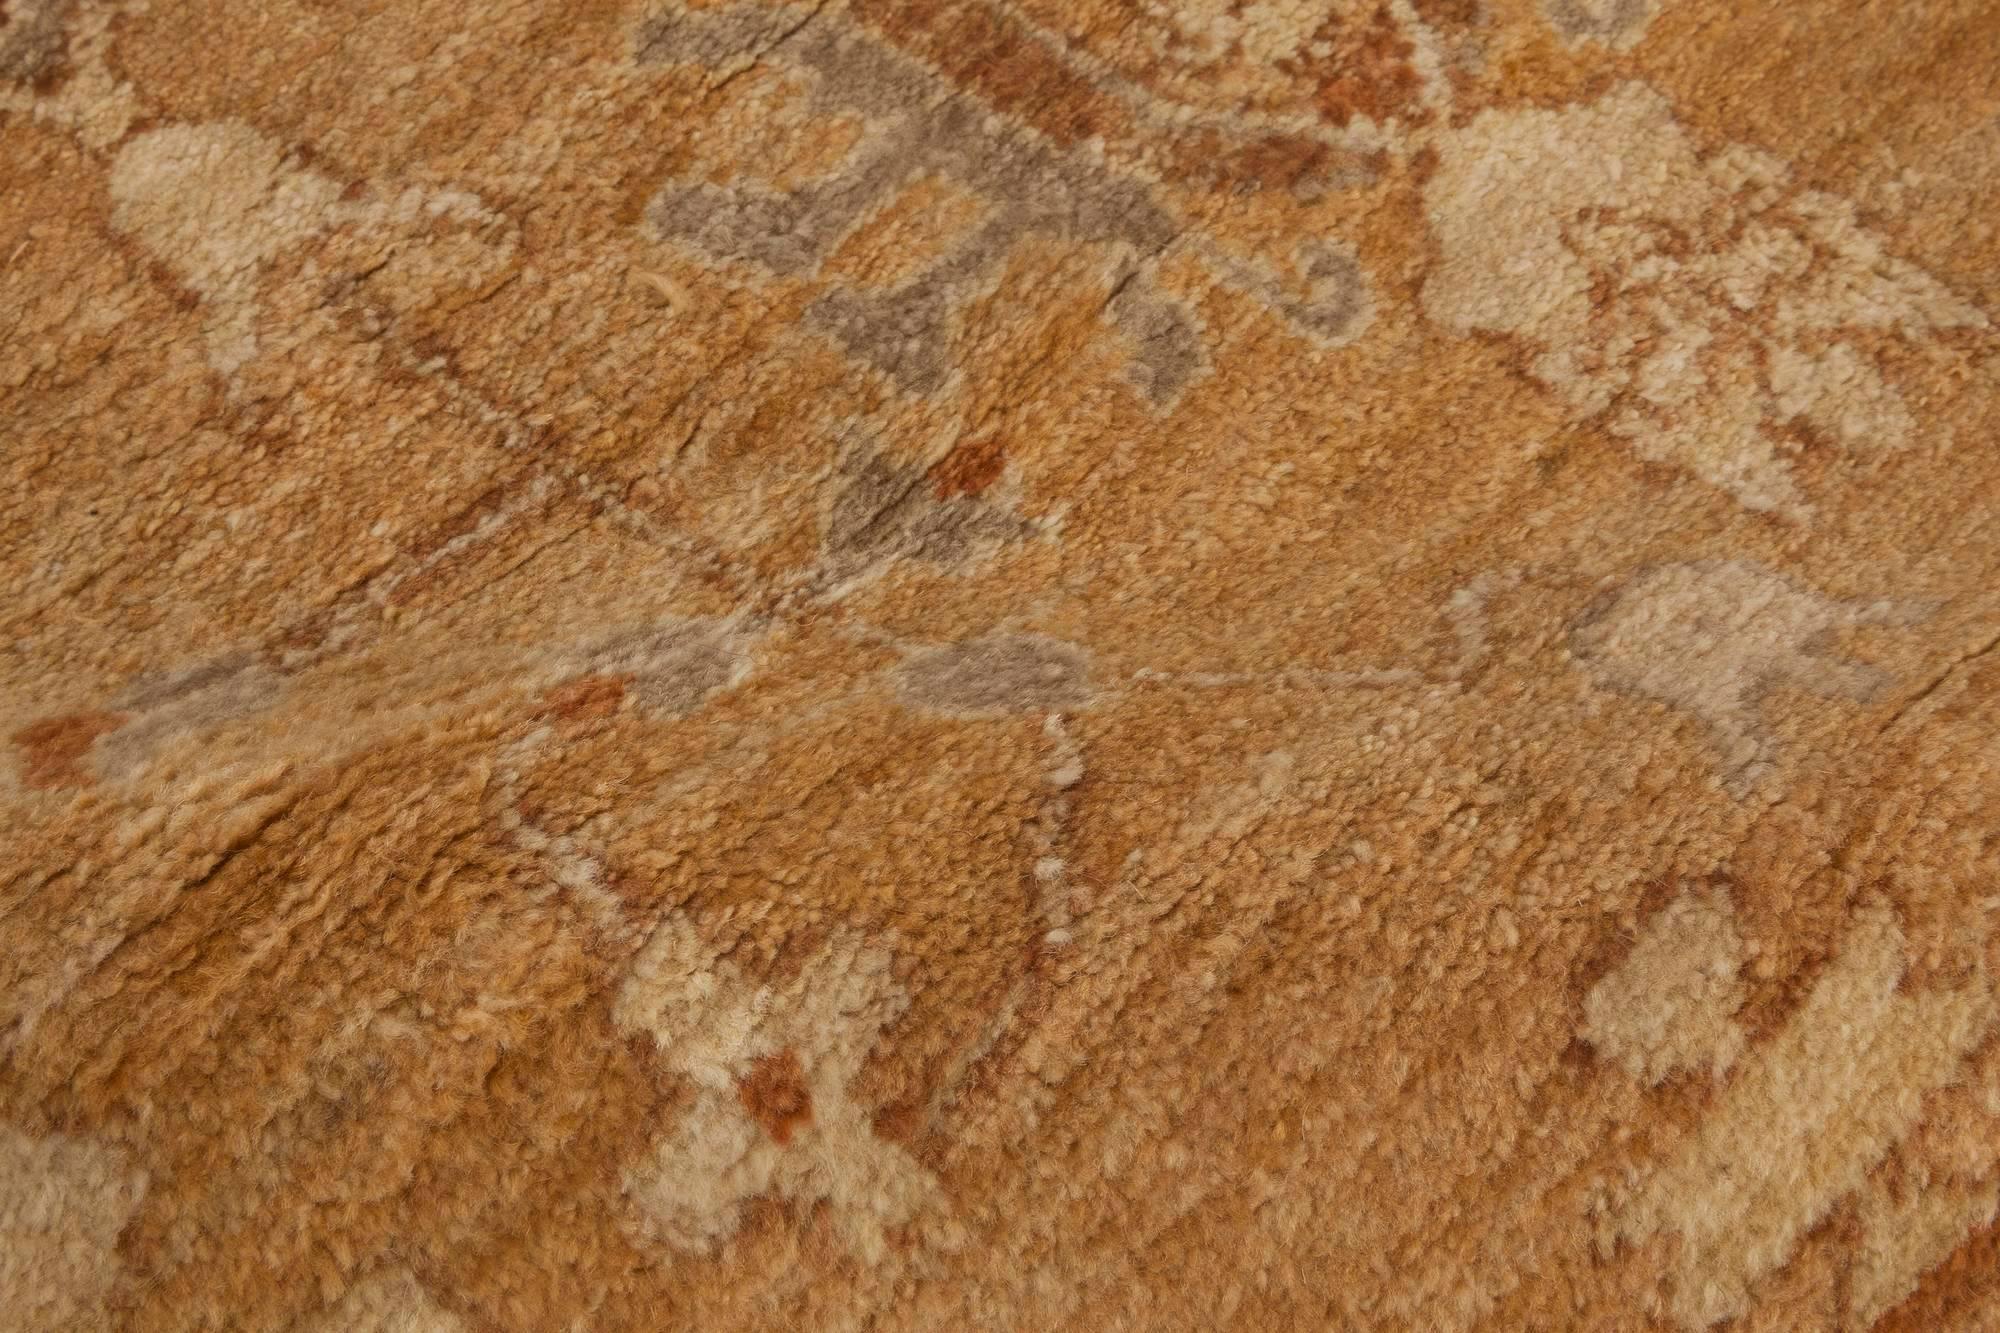 Traditional Tabriz inspired beige 'Fragment' rug by Doris Leslie Blau.
Size: 4'0